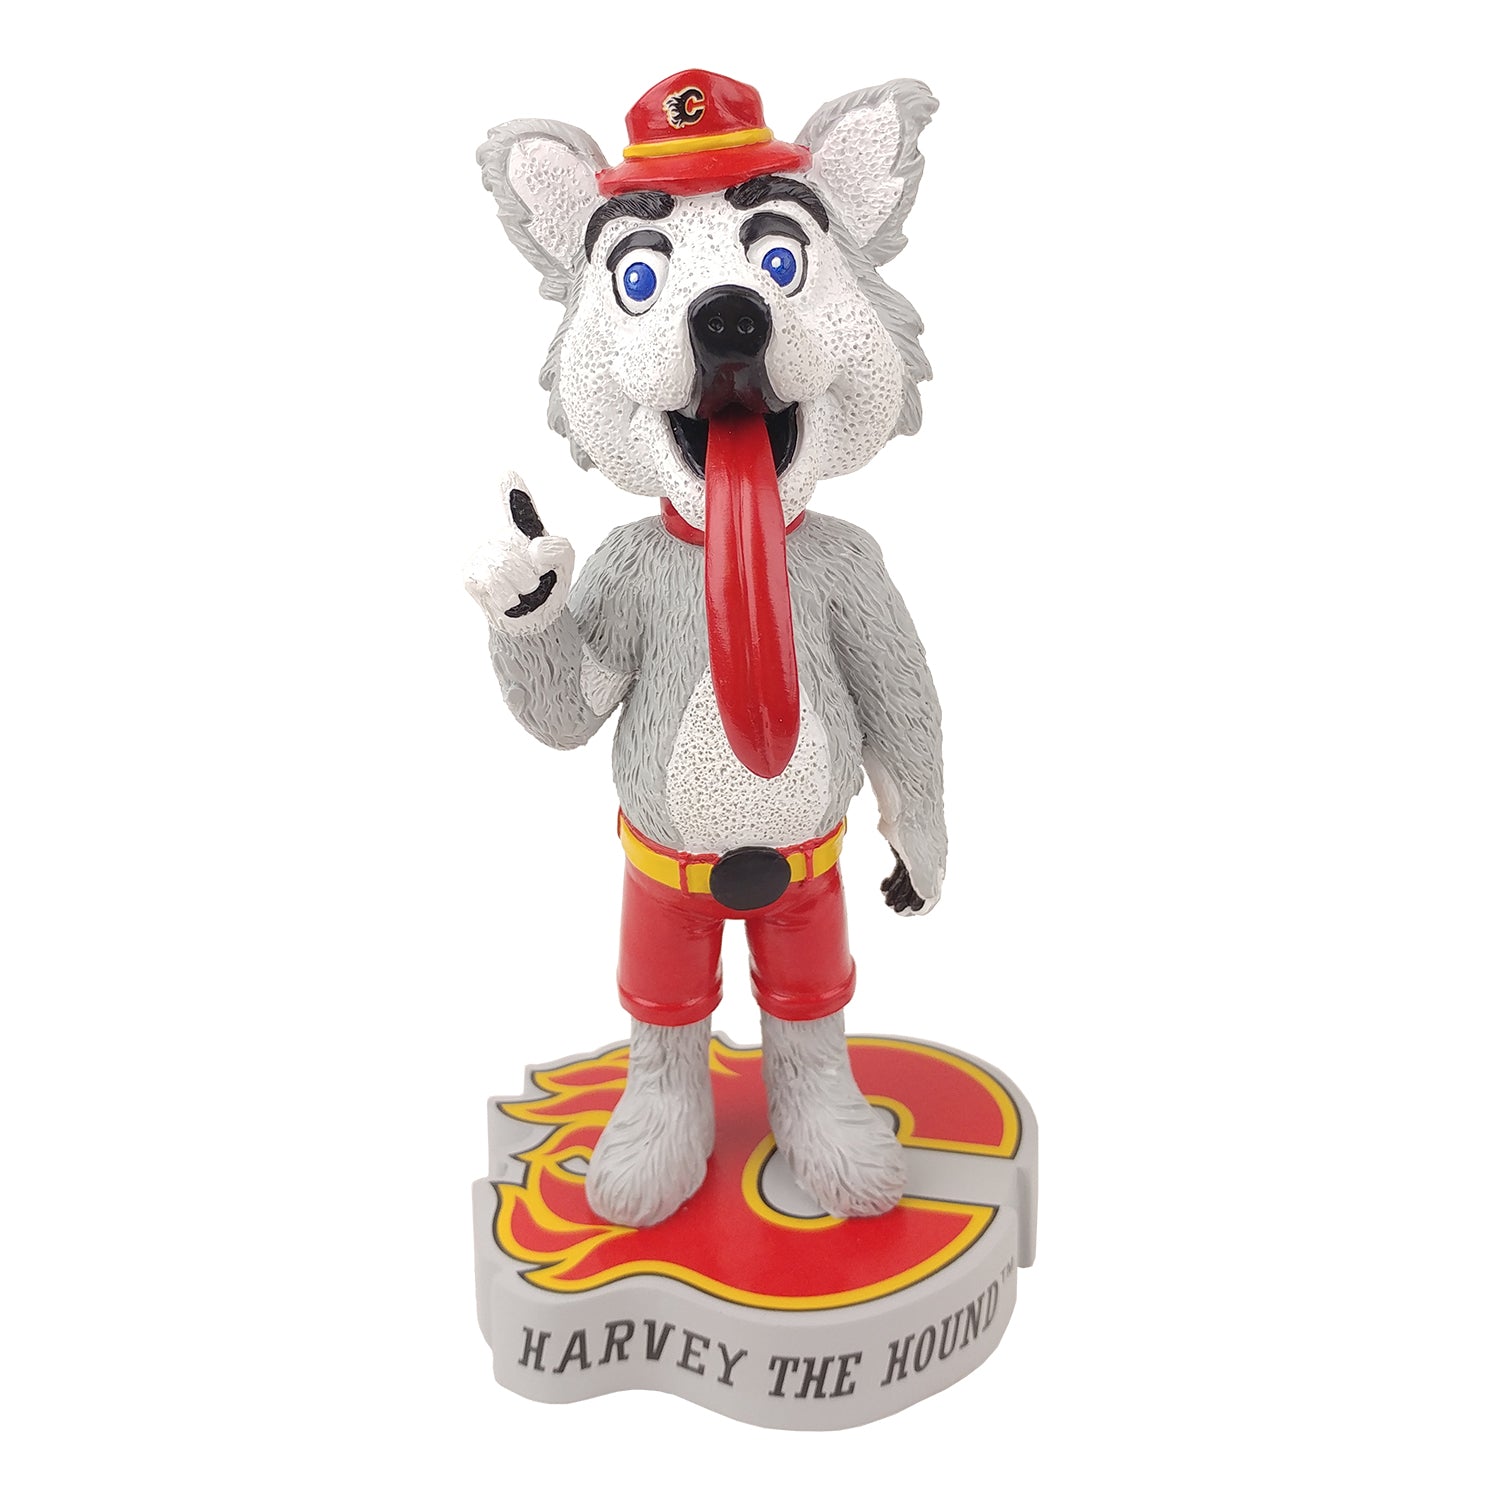 Calgary Flames mascot Harvey The Hound bobblehead